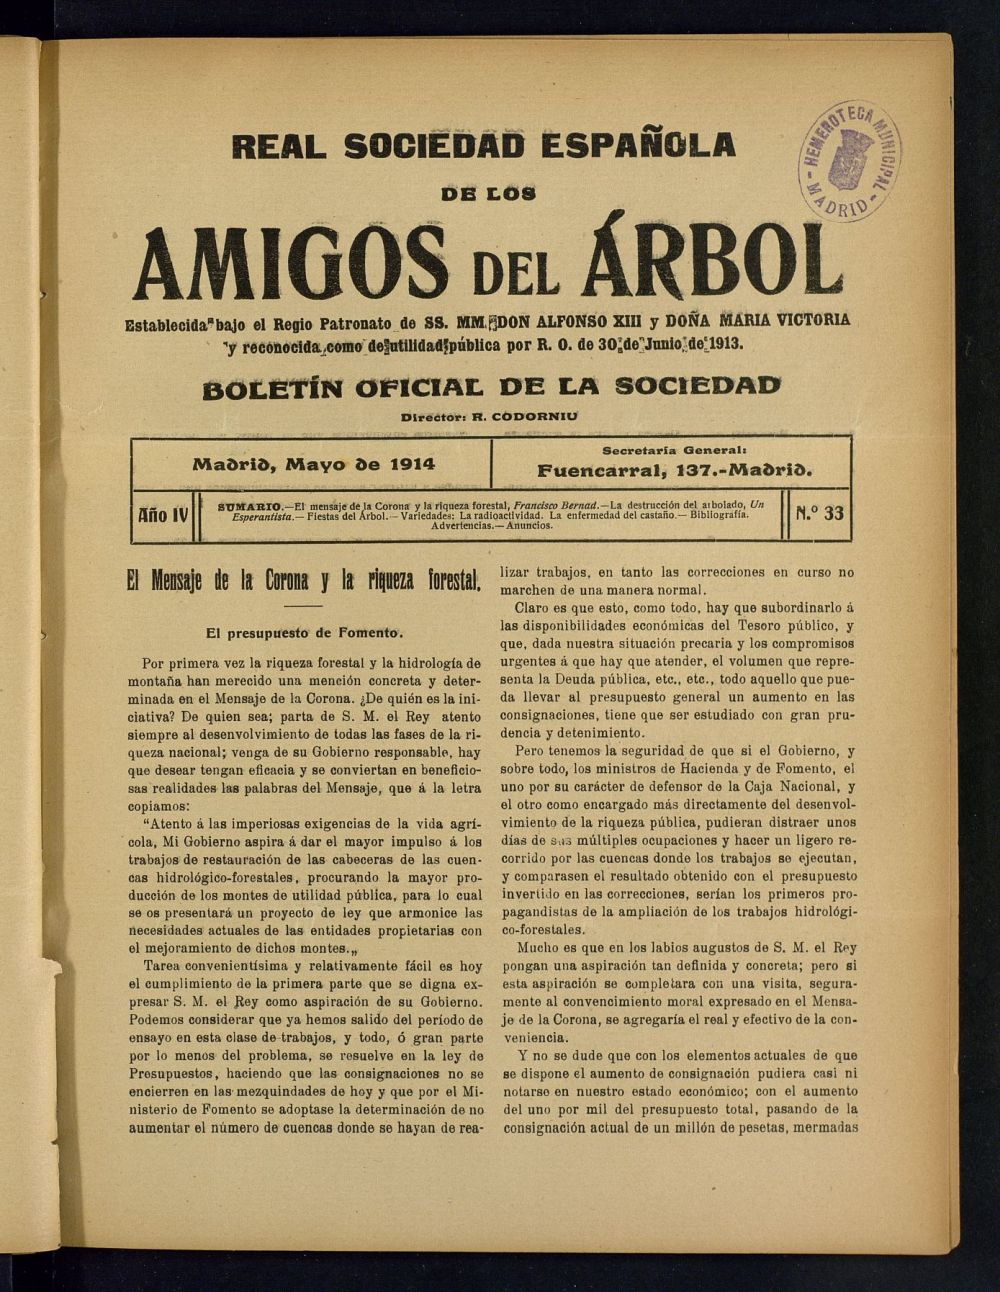 Boletn Comisin organizadora de la Sociedad Espaola de los amigos del rbol de mayo de 1914